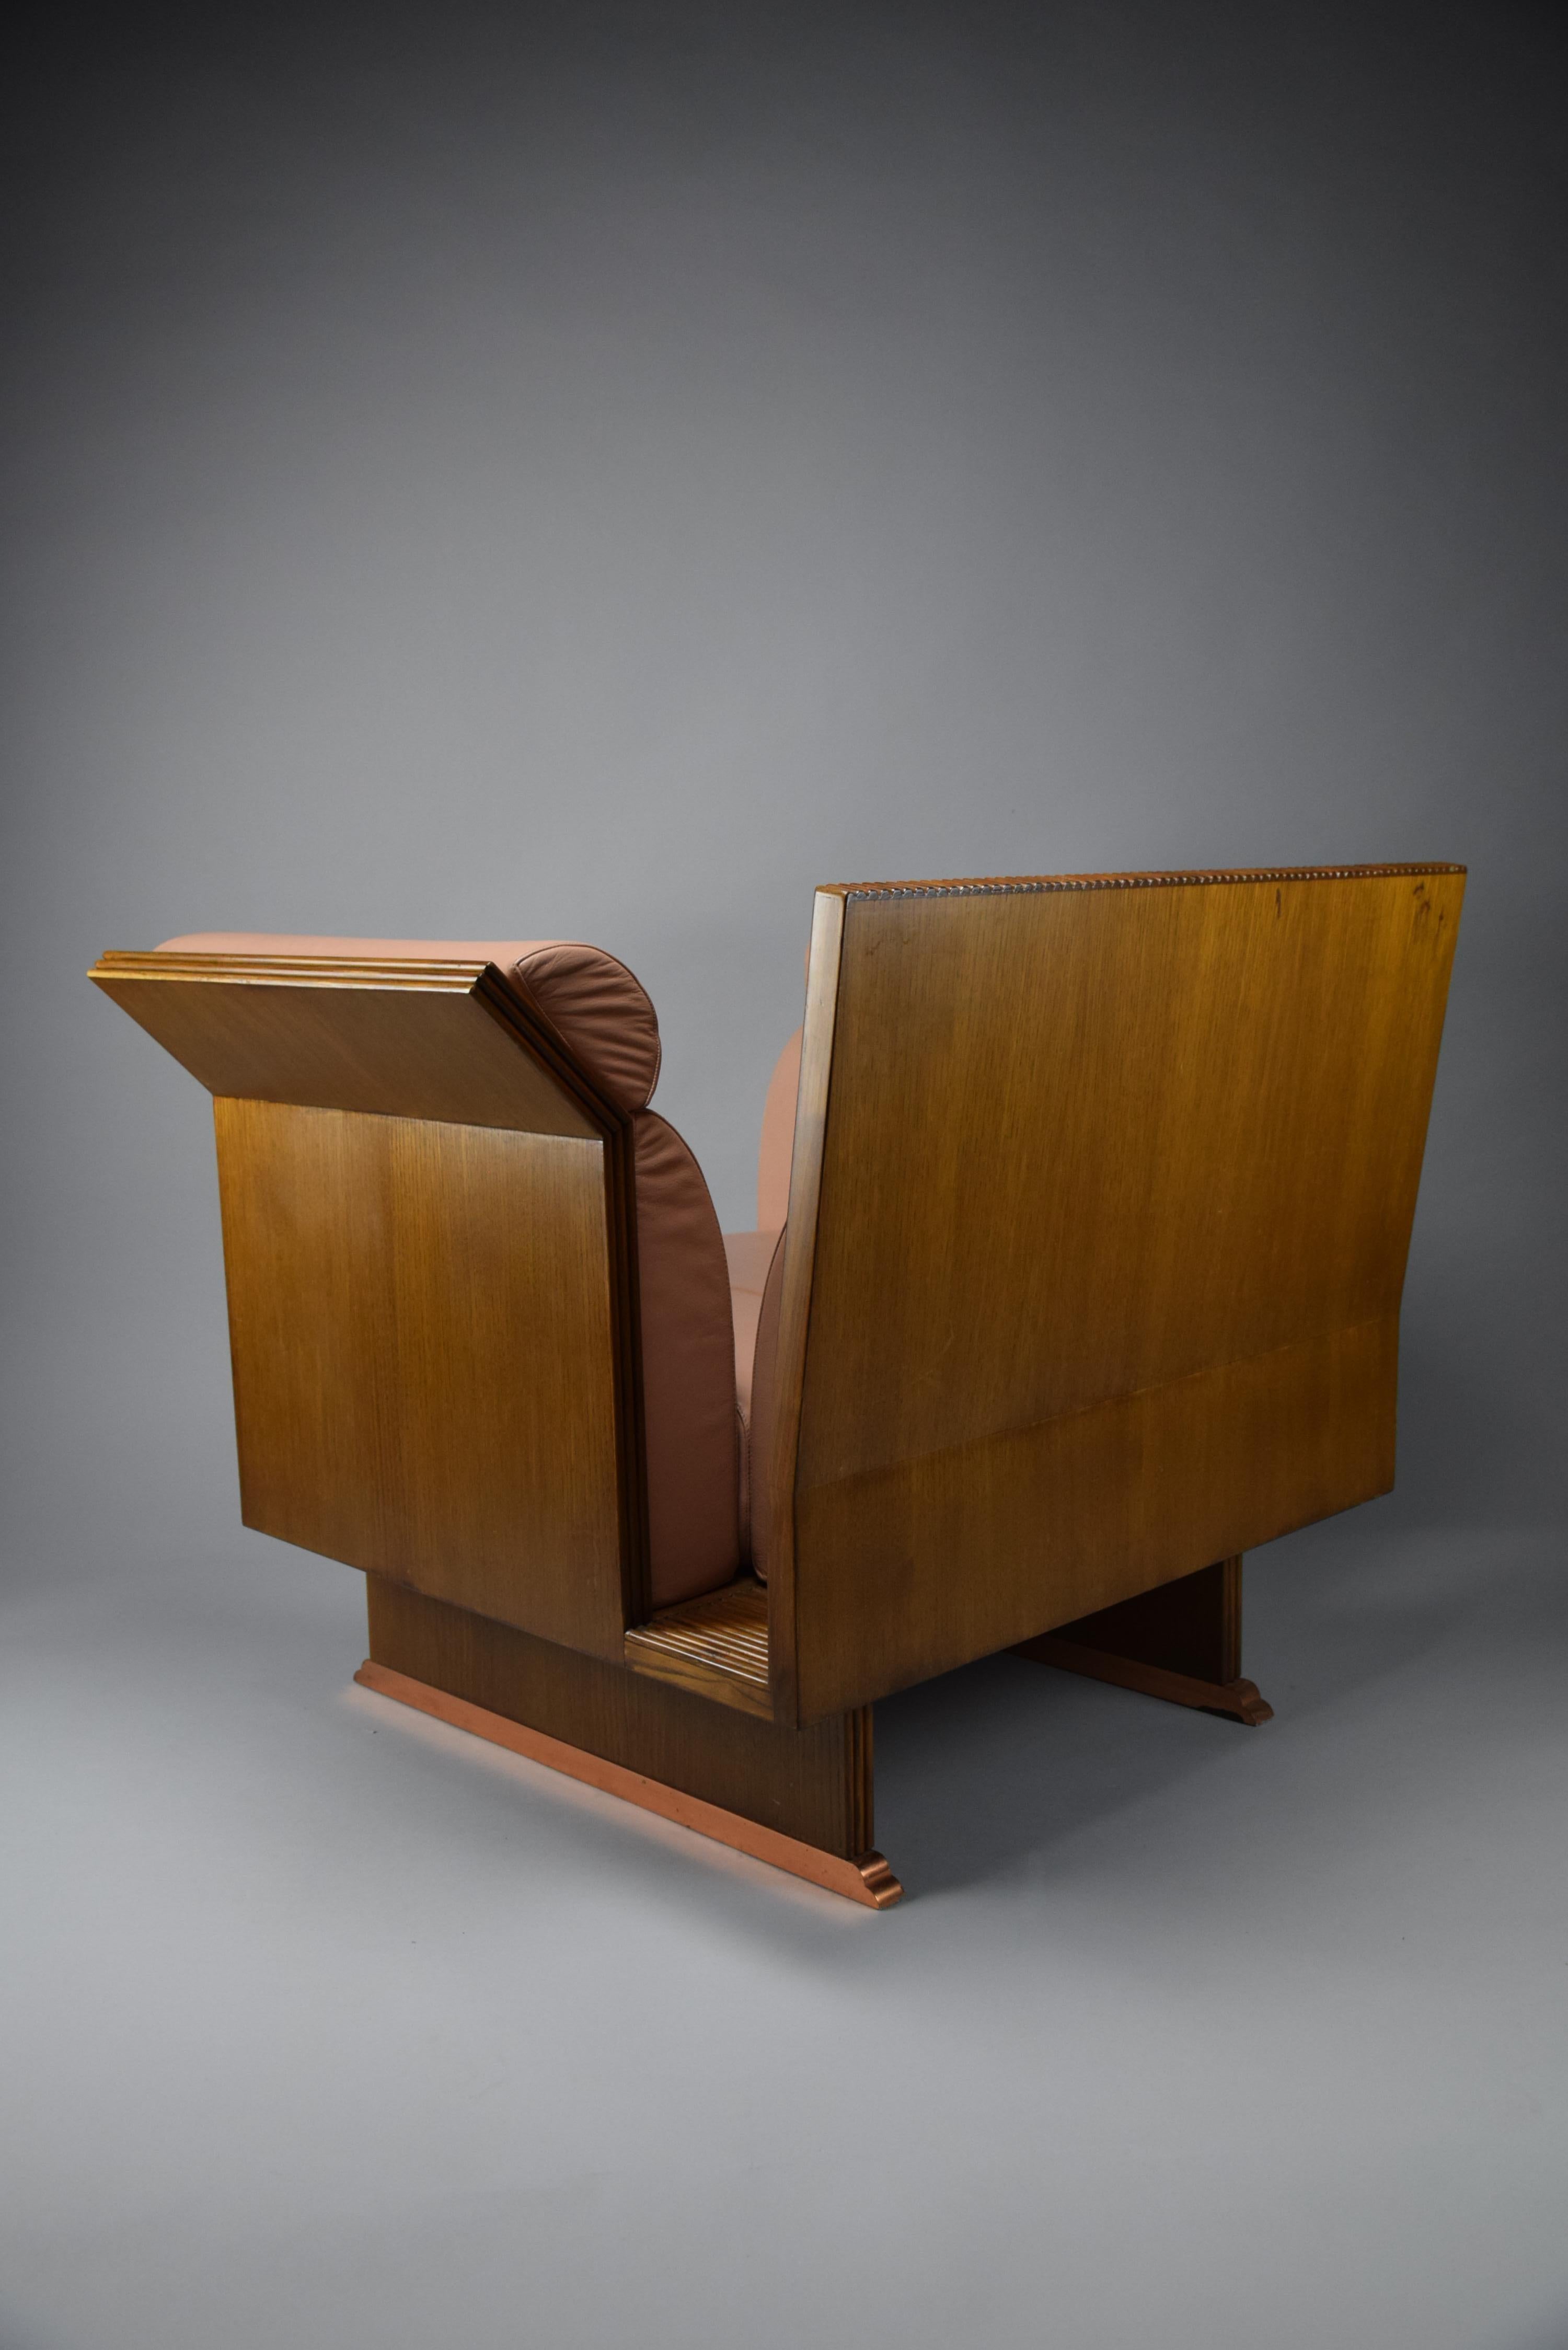 Wir präsentieren den atemberaubenden Sessel Pretenziosa, den Ugo La Pietra 1983 für Busnelli Italien entworfen hat. Dieser neo-eklektische, postmoderne Stuhl ist der Inbegriff von Eleganz und Raffinesse, mit seinem schlanken Jatoba-Holzrahmen und